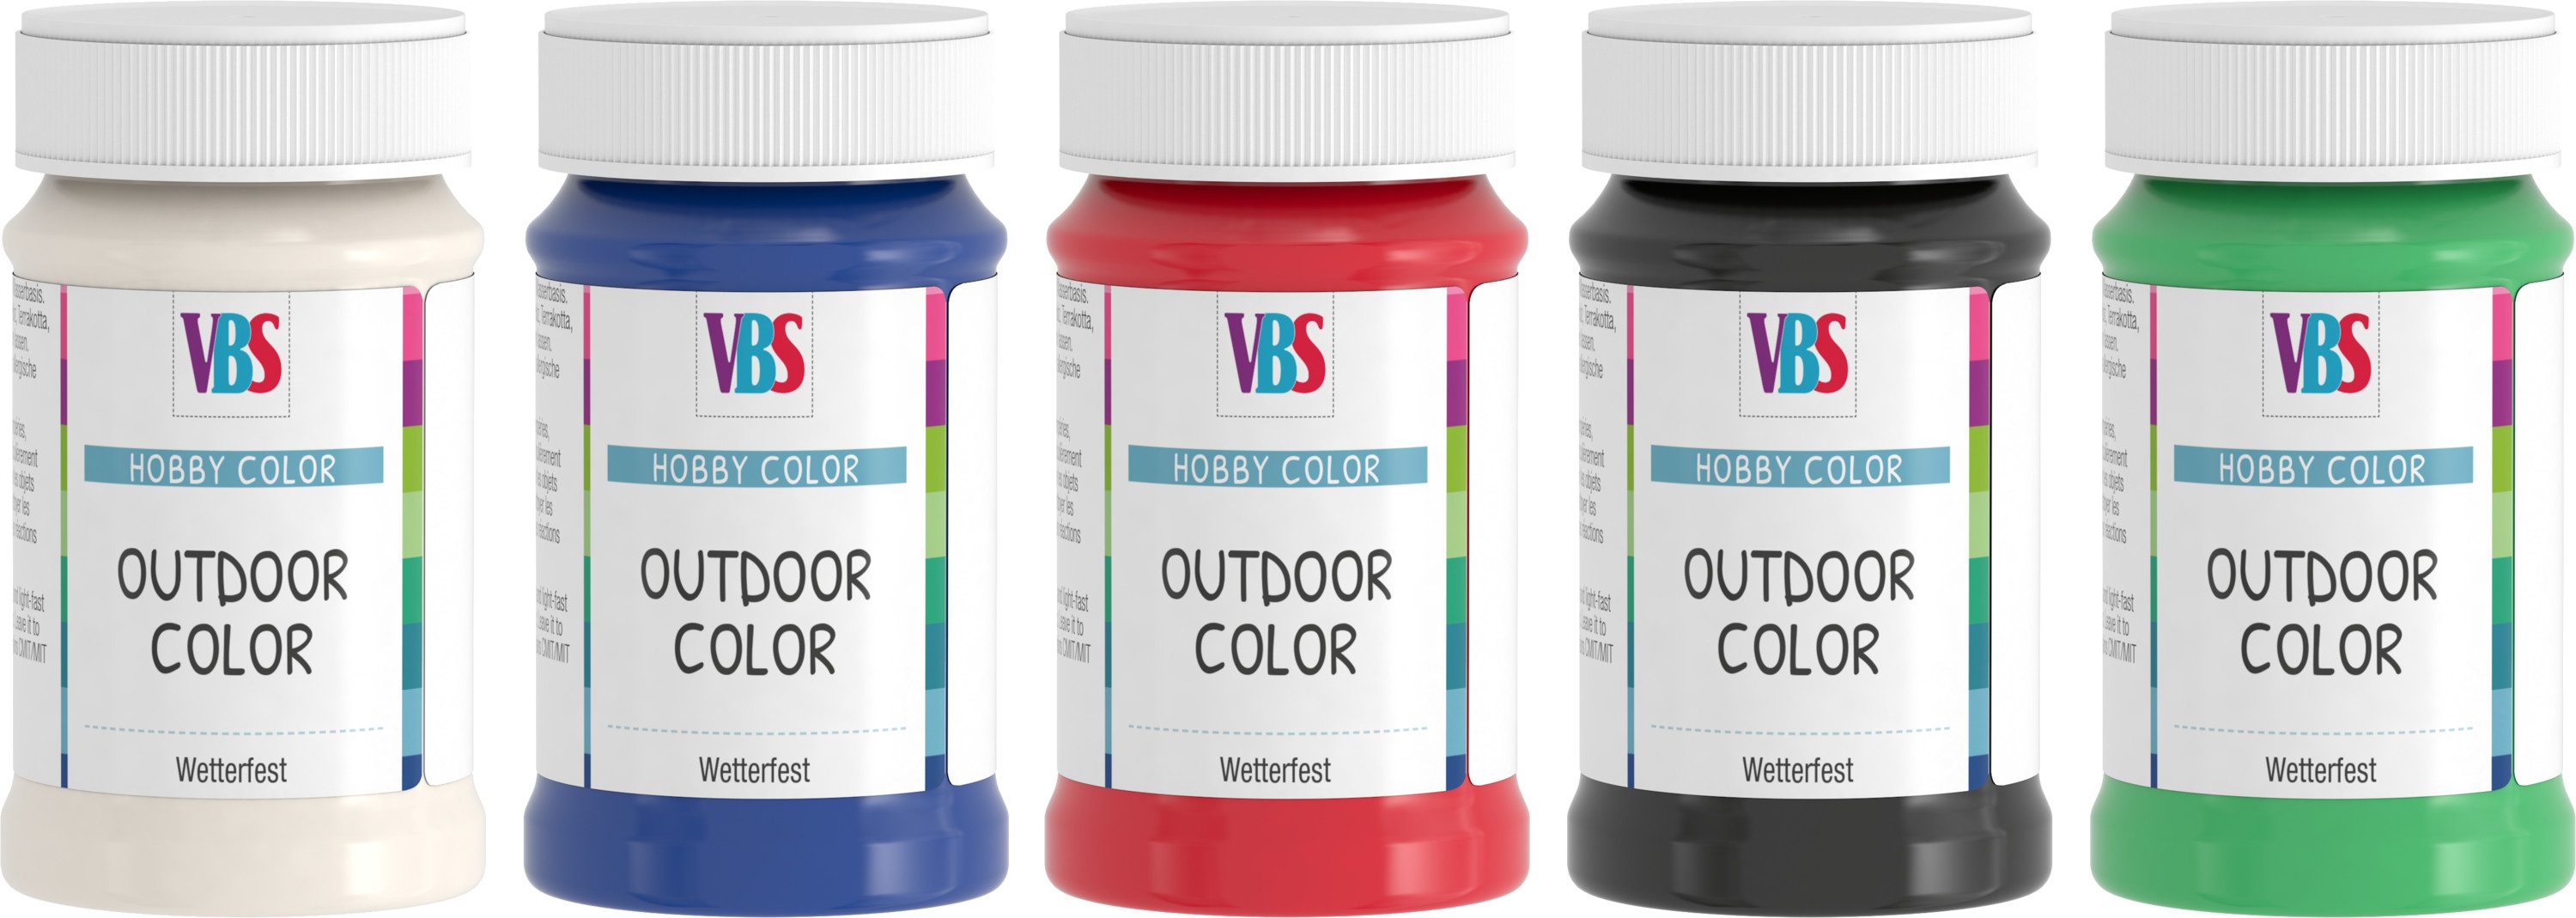 VBS Bastelfarbe Farben-Set Outdoor Color Best of..., 5er-Set